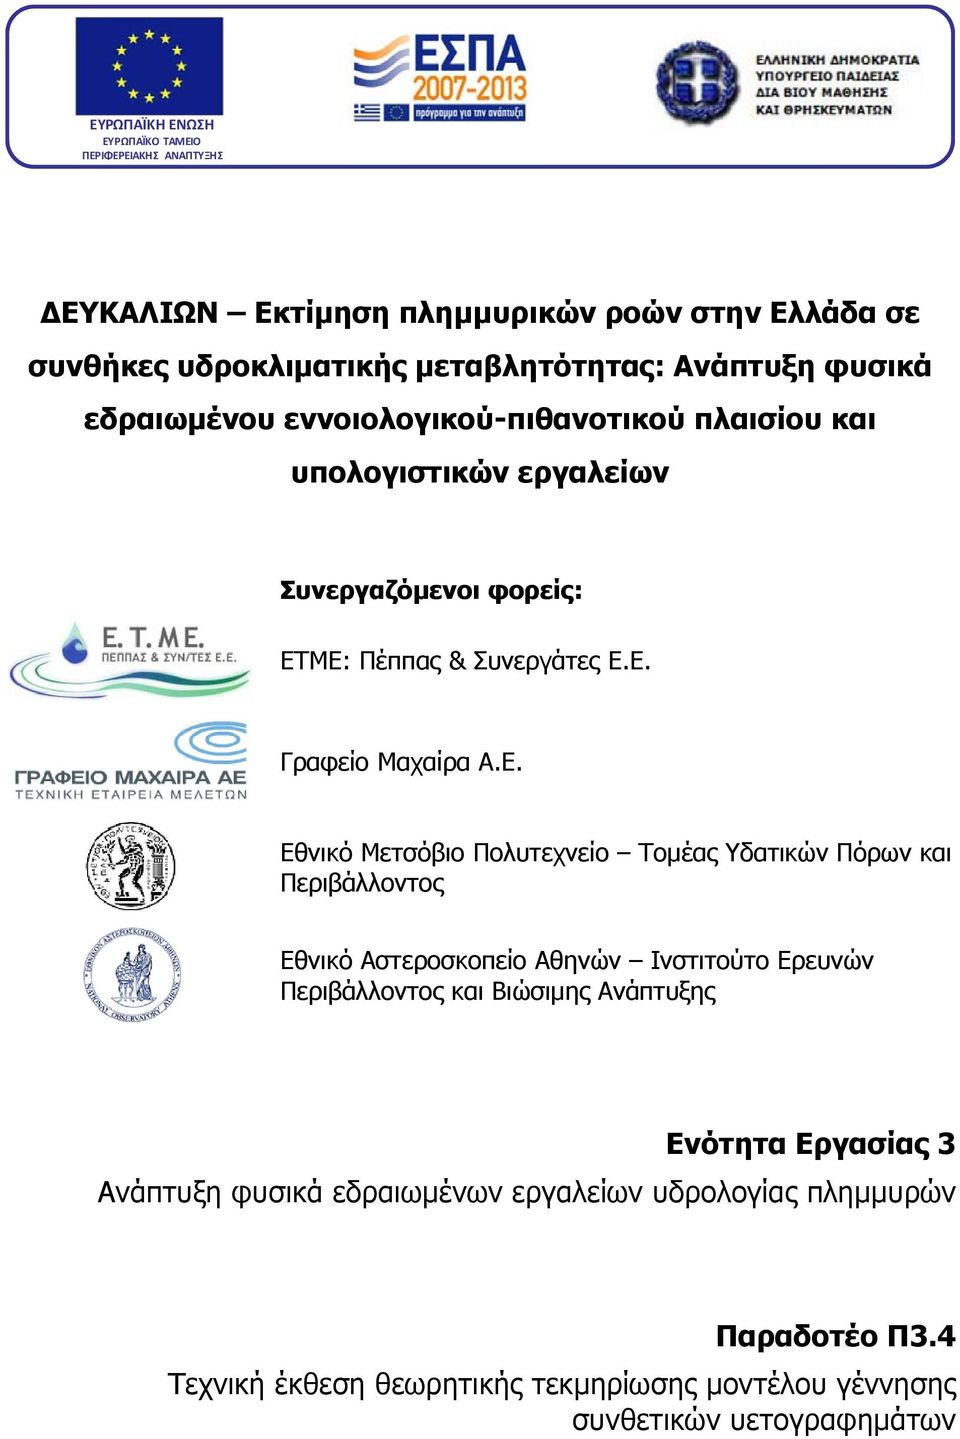 ΜΕ: Πέππας & Συνεργάτες Ε.Ε. Γραφείο Μαχαίρα Α.Ε. Εθνικό Μετσόβιο Πολυτεχνείο Τοµέας Υδατικών Πόρων και Περιβάλλοντος Εθνικό Αστεροσκοπείο Αθηνών Ινστιτούτο